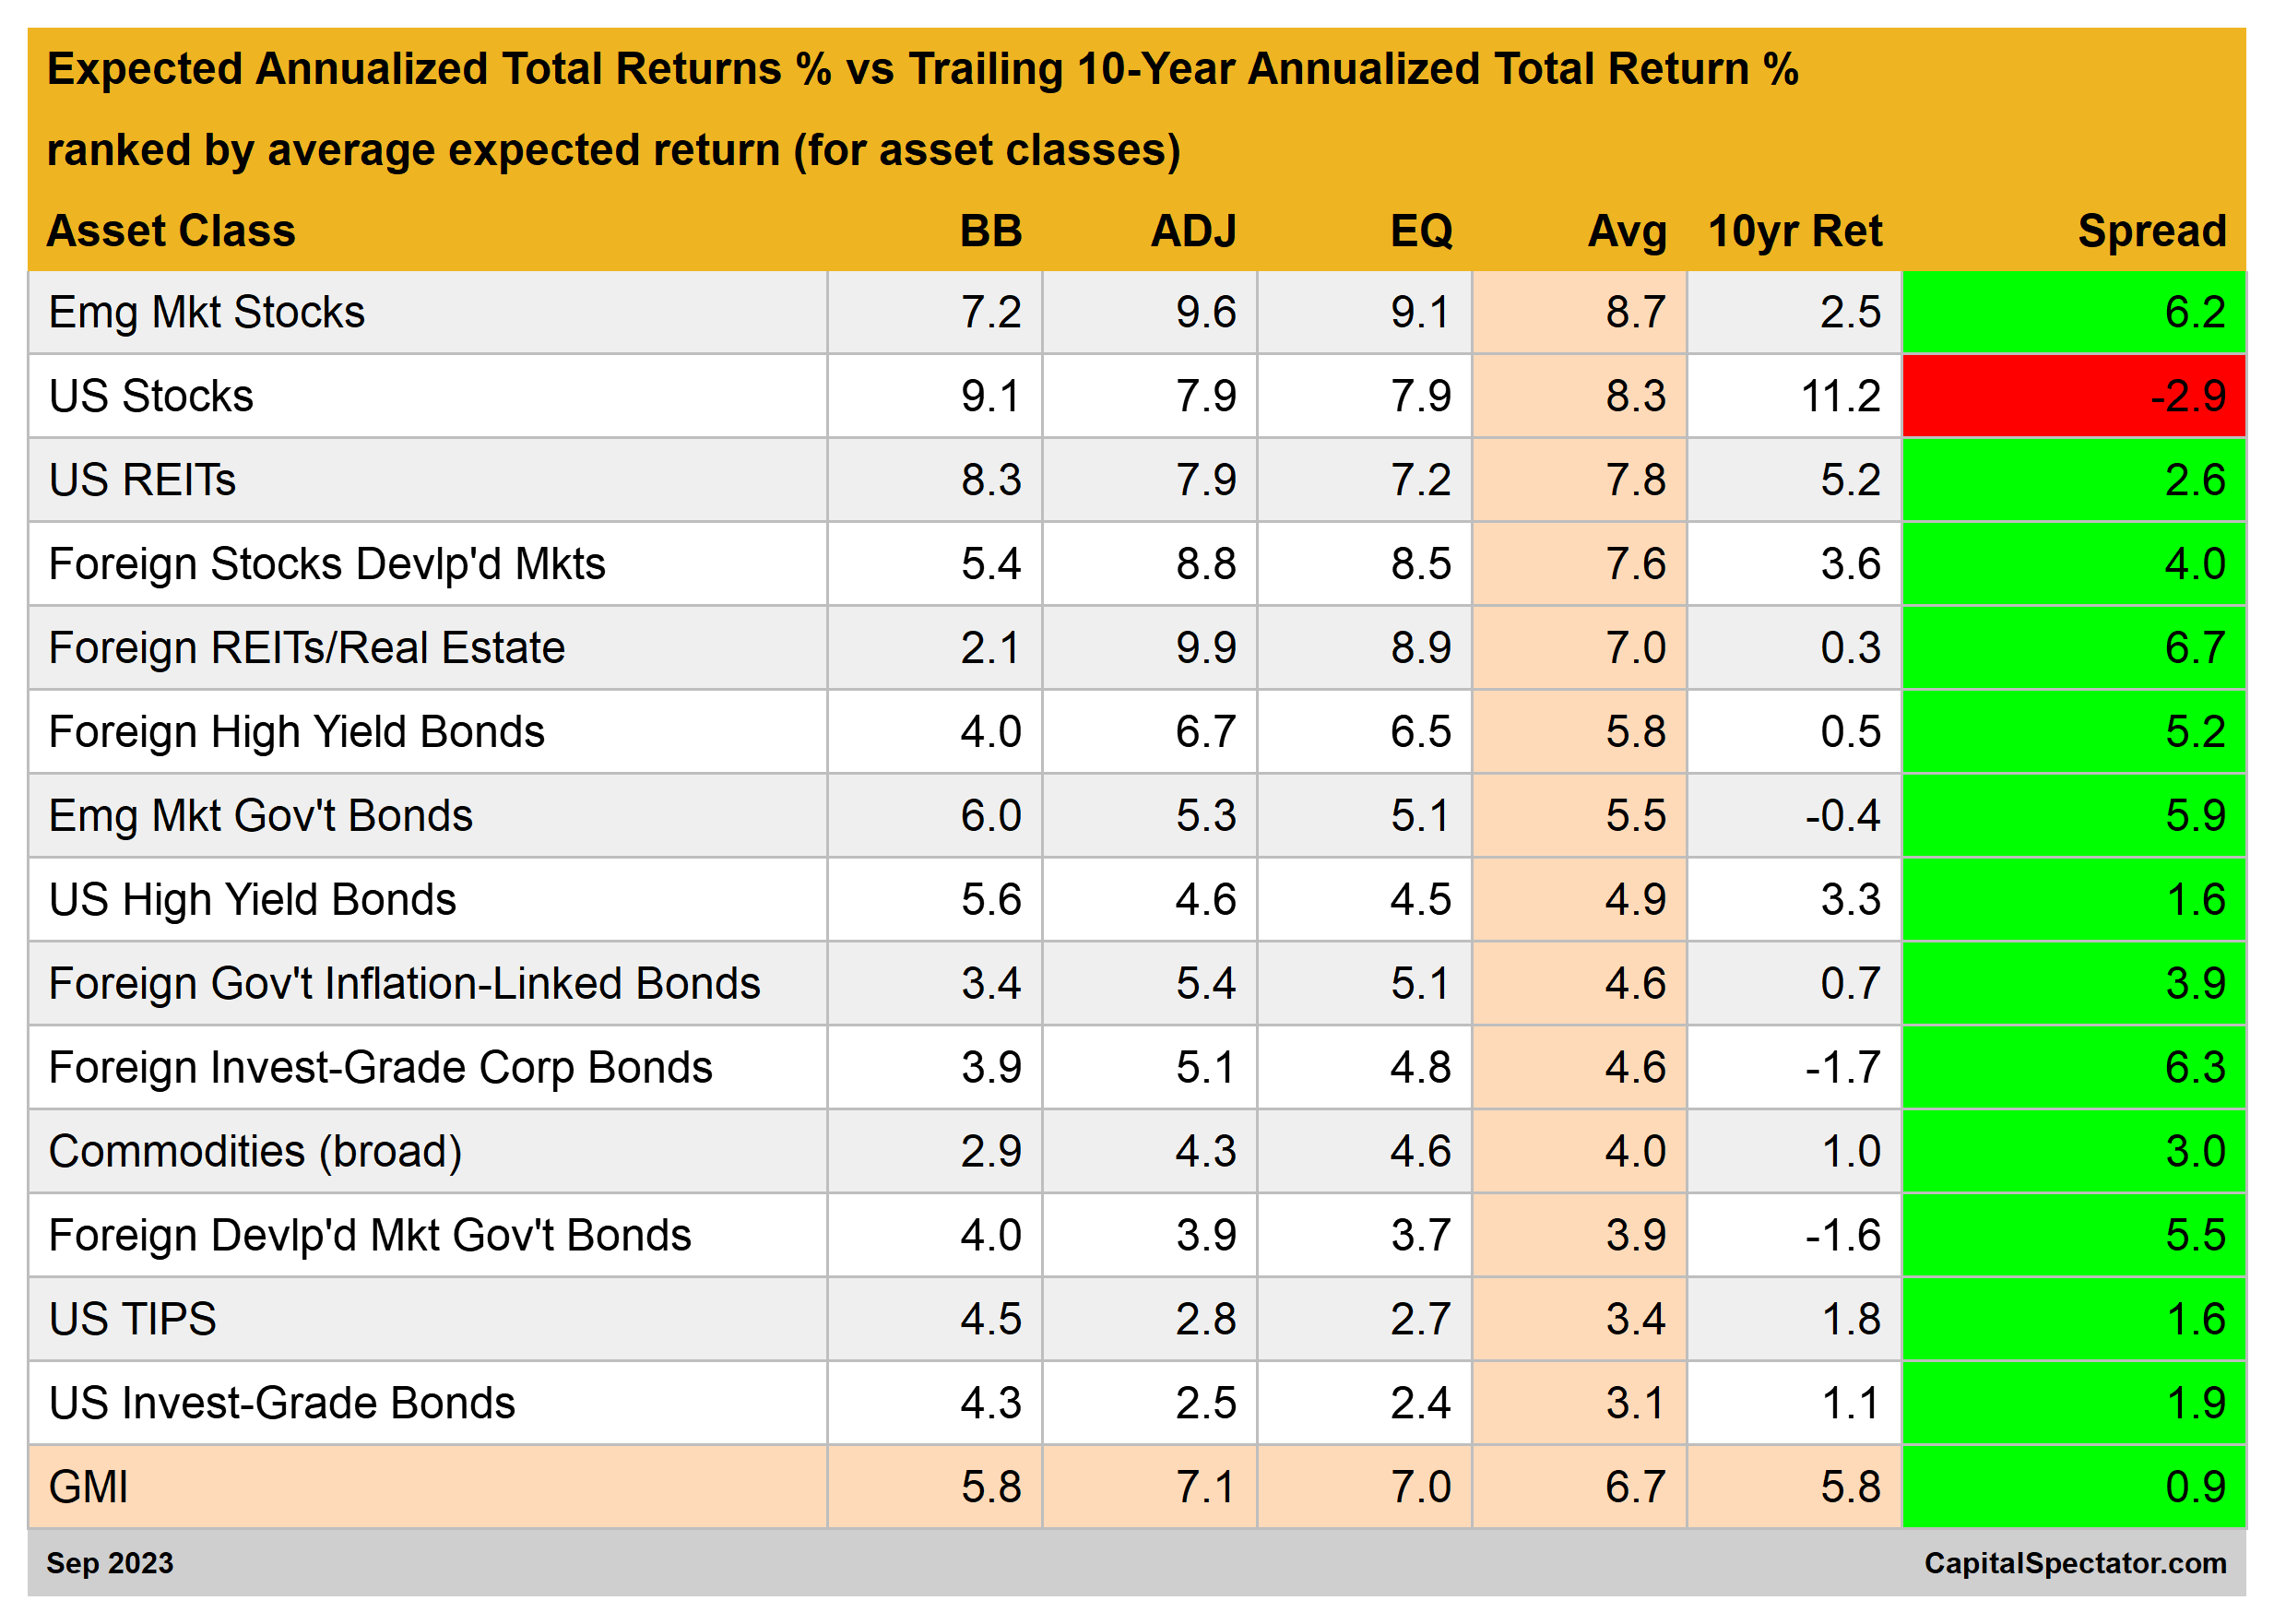 Expectativa de retornos totais anualizados vs retornos dos últimos 10 anos